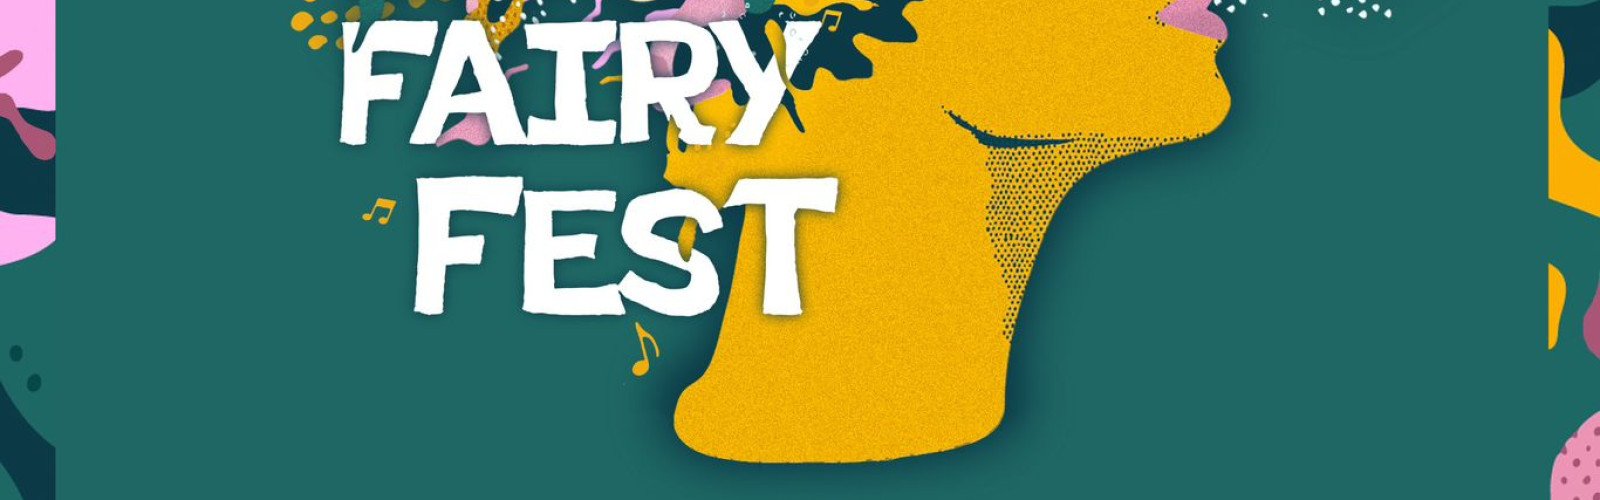 Festival FairyFest